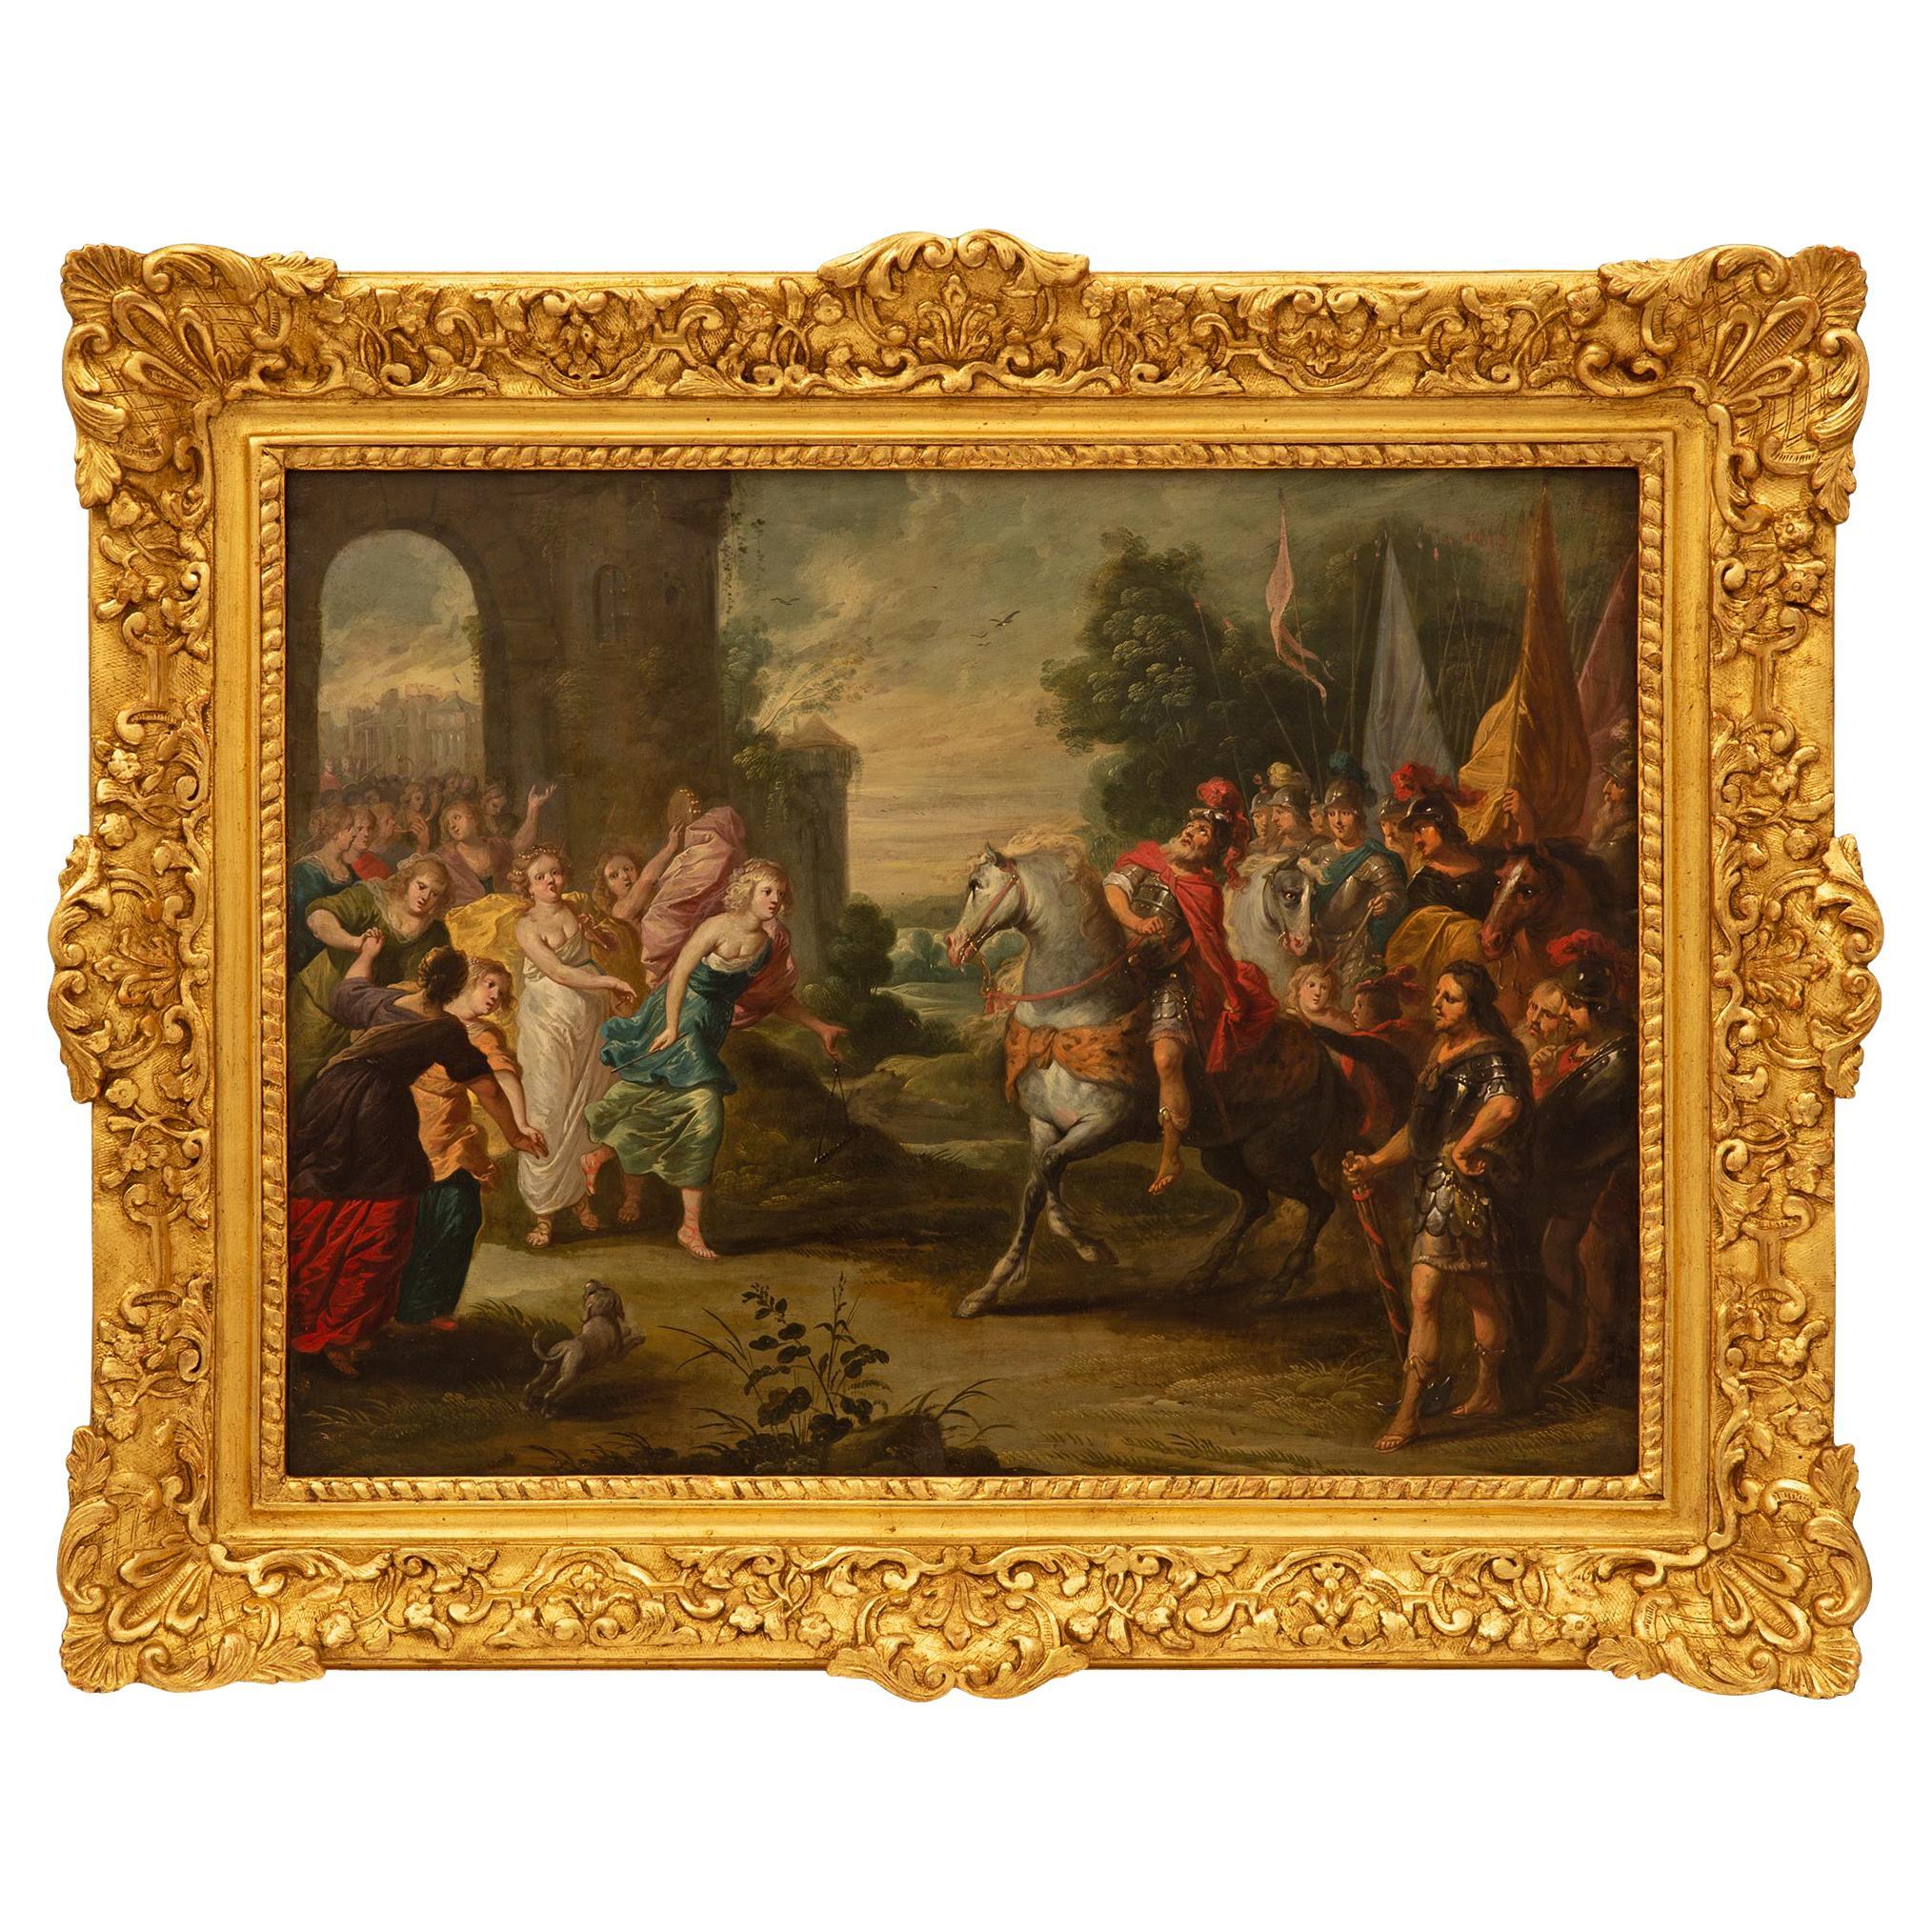 Peinture à l'huile sur toile flamande de la fin du XVIIe siècle/début du XVIIIe siècle